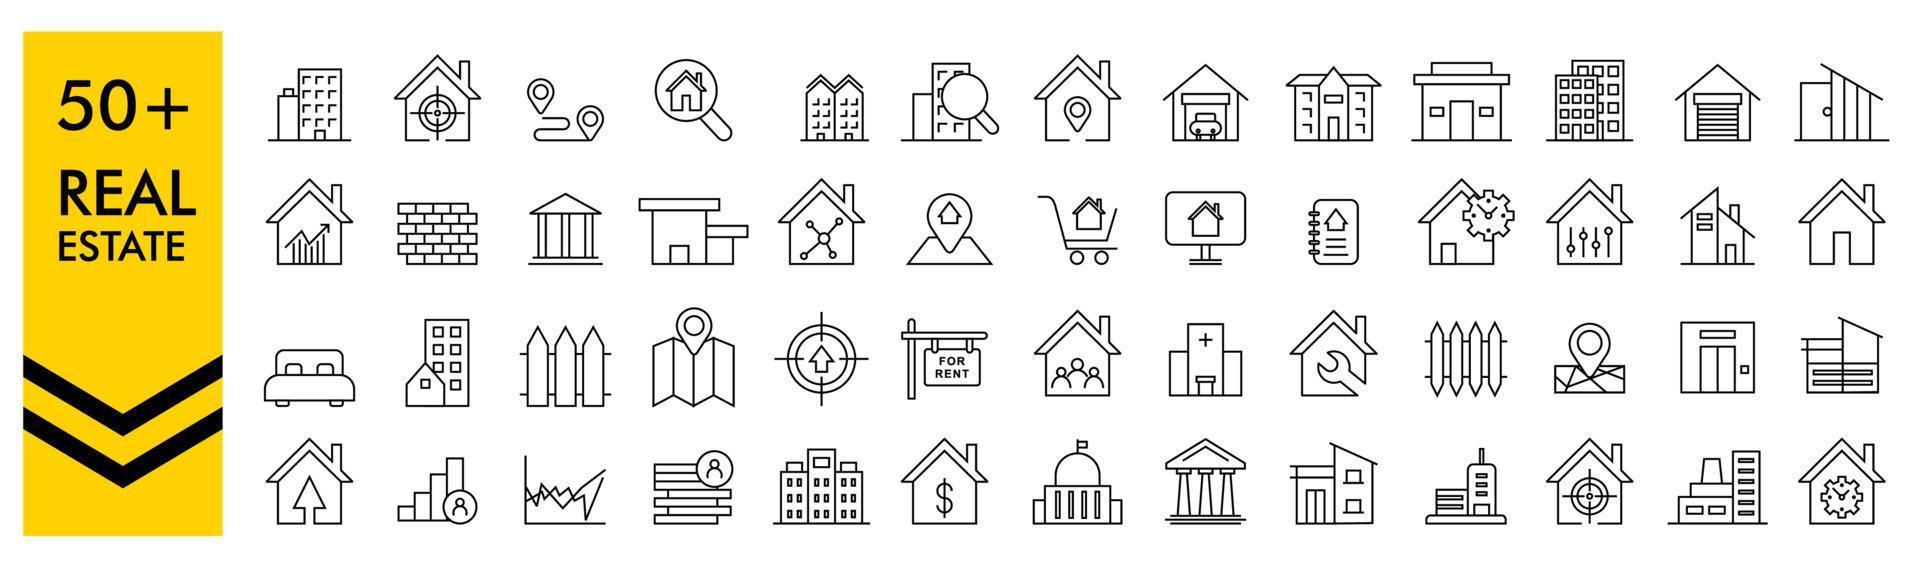 Immobilien-Icons gesetzt. Home-Symbol. Haussymbole. vektorillustration, minimaler webikonensatz der immobilien. enthalten die Symbole wie Immobilien, Immobilien, Hypotheken, Wohnungsbaudarlehen und mehr. Sammlung von Symbolen vektor